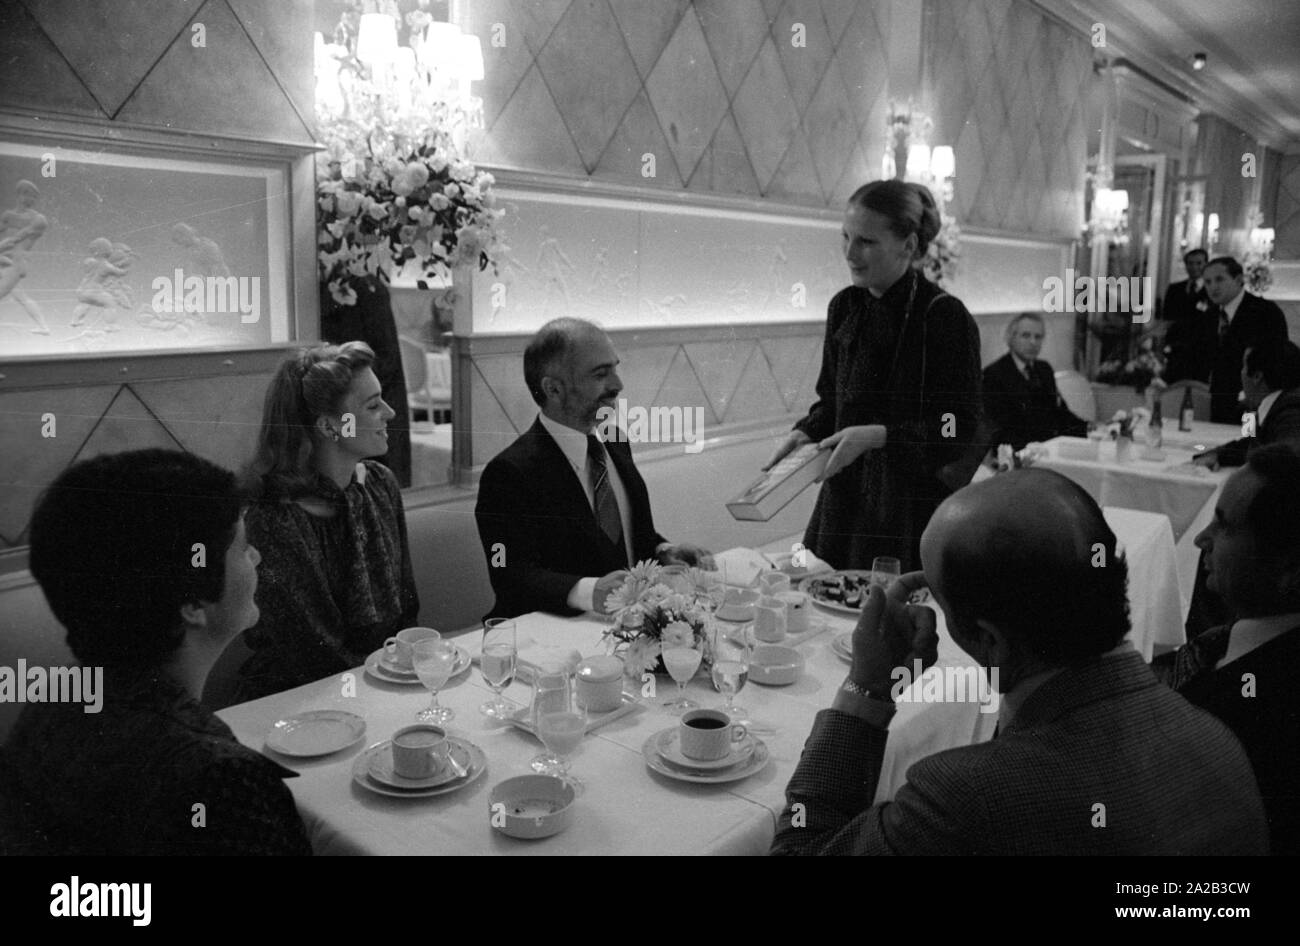 Nach einer diplomatischen Konferenz in Bonn, dem jordanischen König Hussein ich ein paar Tage in Berchtesgaden verbracht mit seiner Frau Königin Nur (zivile Name: Lisa Halaby), jedoch anlässlich seines Geburtstages sie im Hotel "Vier Jahreszeiten" in München verbracht. Das Bild zeigt das königliche Paar am Tisch mit Gästen, König Hussein erhält ein Geschenk. Stockfoto